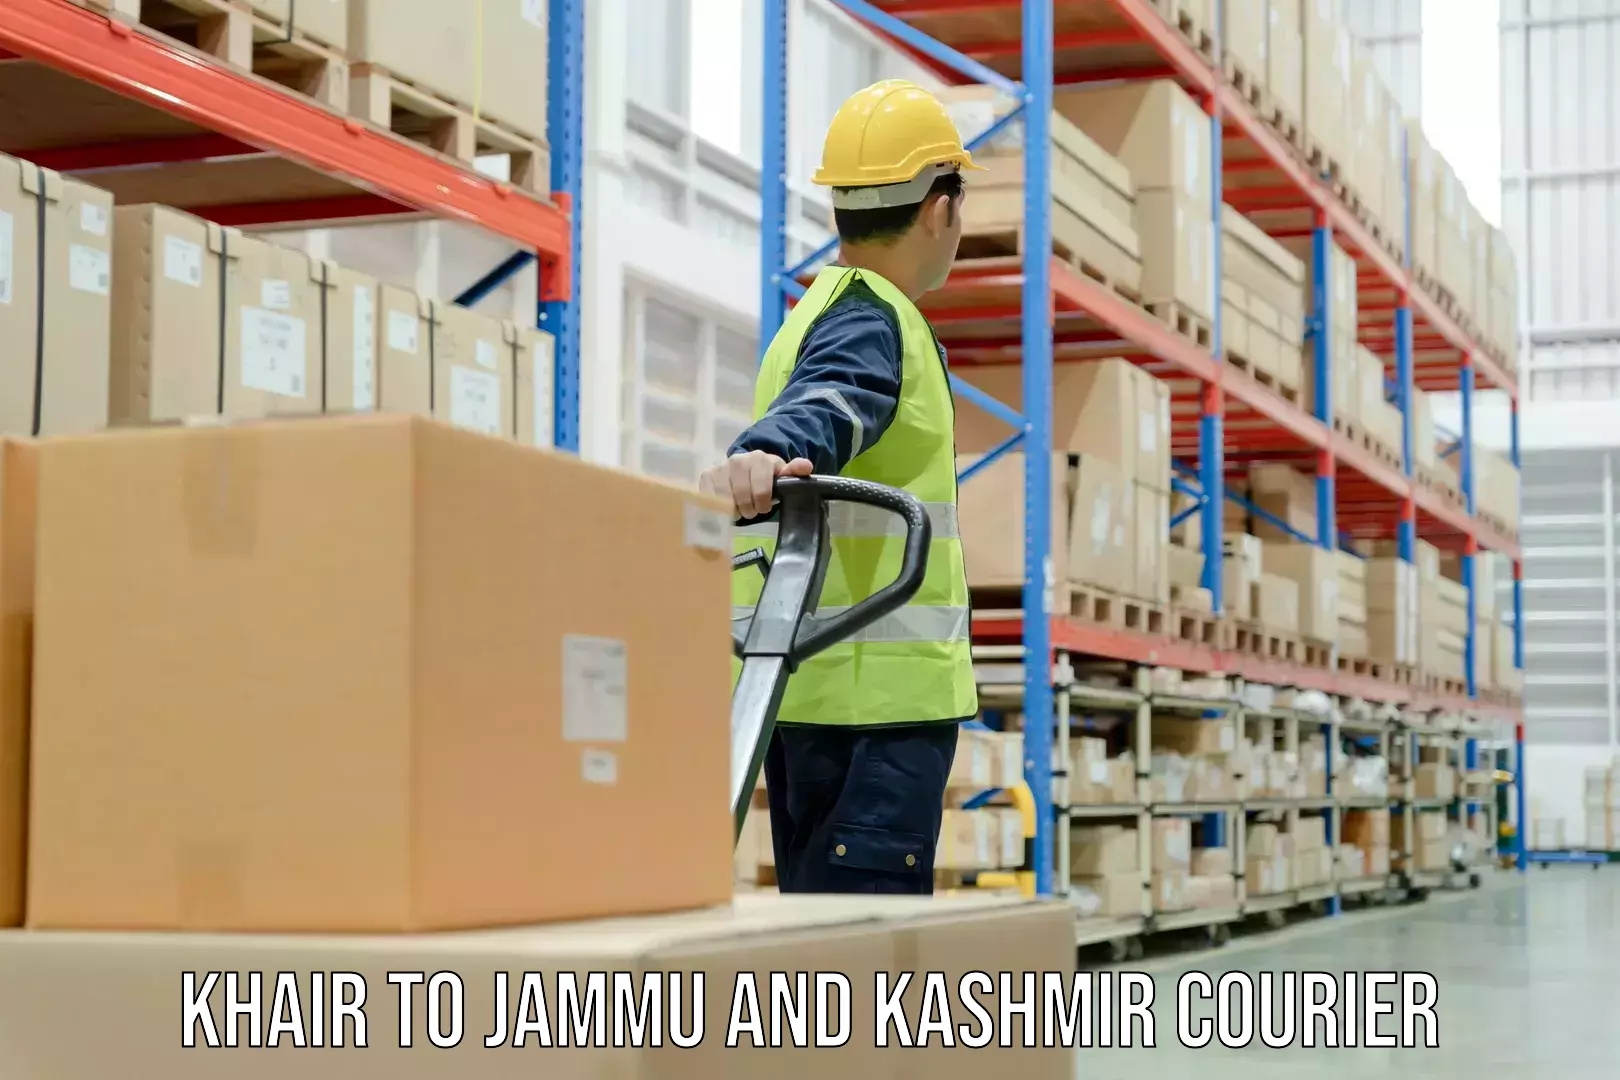 Express package handling Khair to Jammu and Kashmir